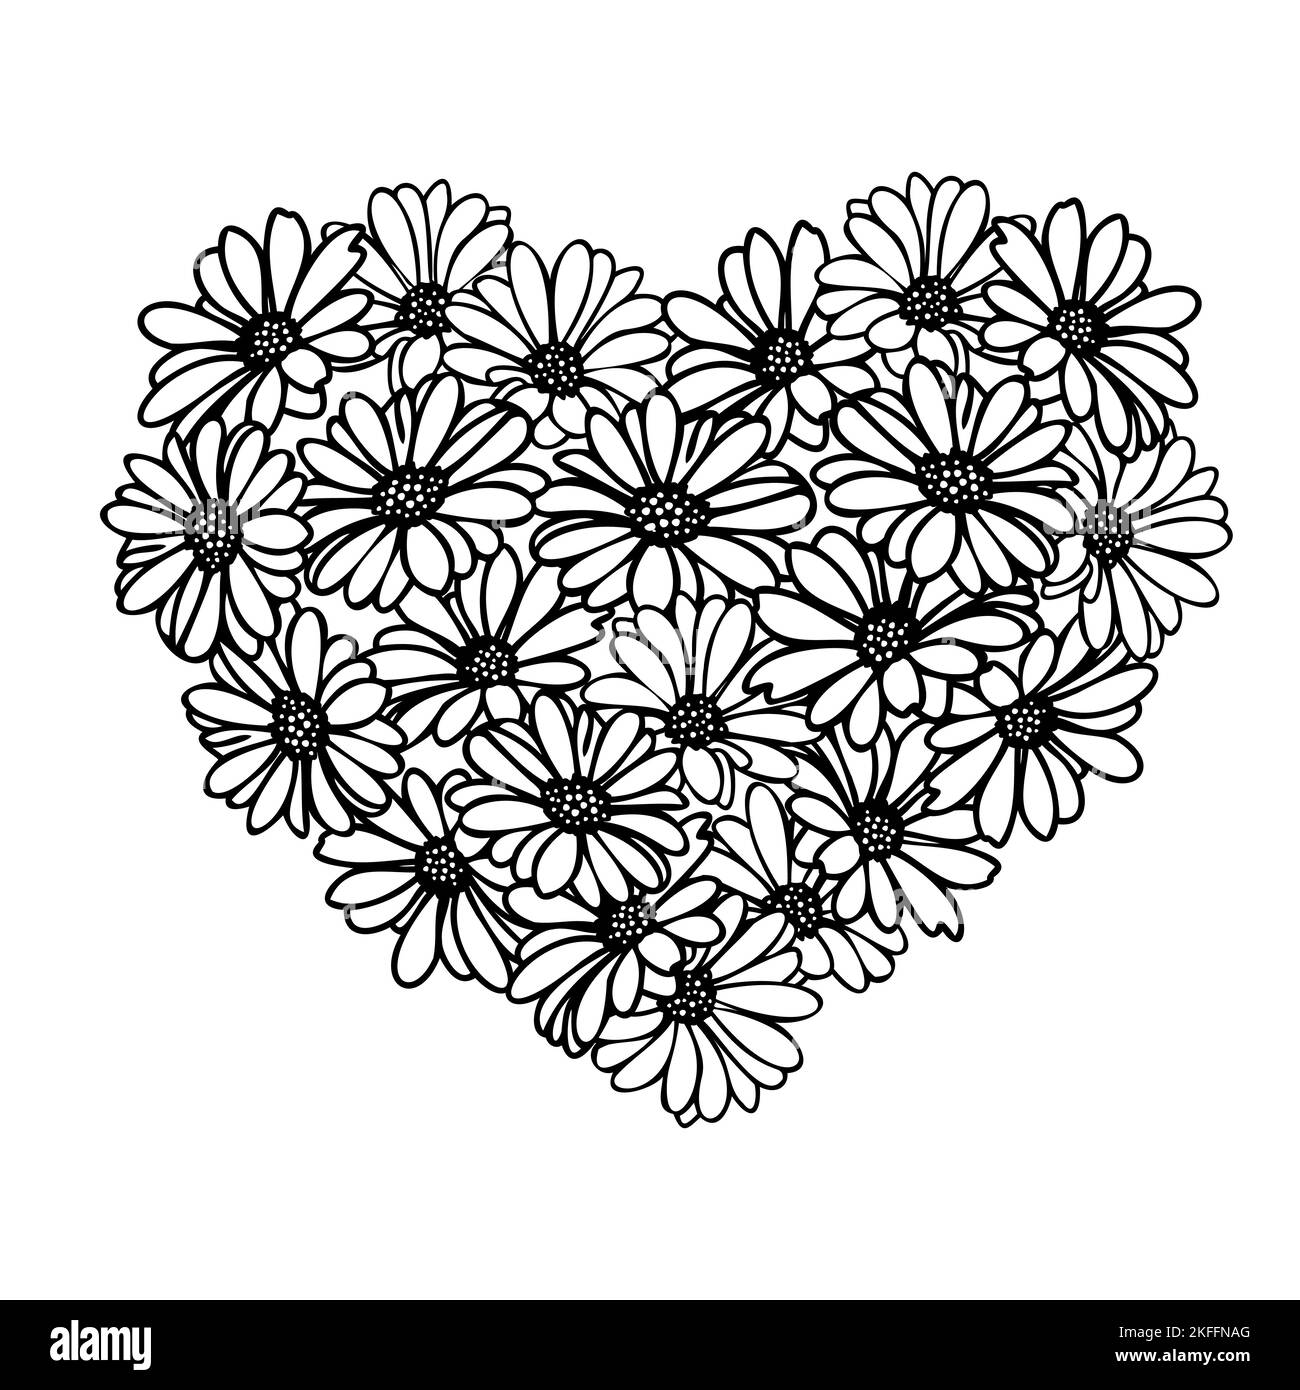 Valentinstag floralen Herz Rahmen mit Gänseblümchen Blume Stock Vektor